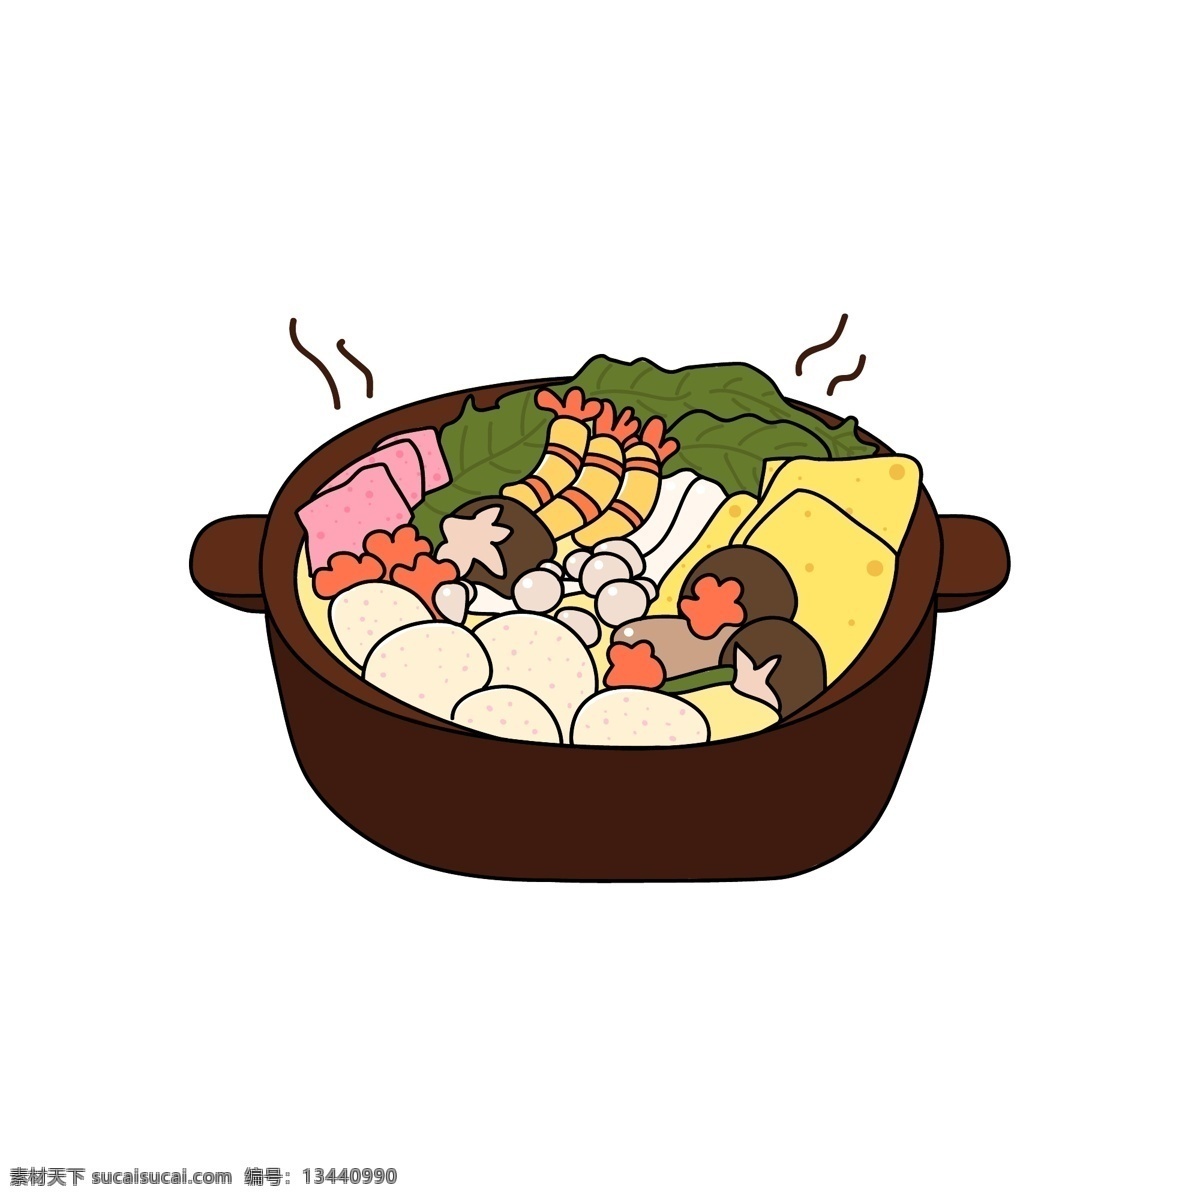 卡通 手绘 火锅 食 材 矢量图 日式 寿喜锅 食材 食物 可爱 火锅配菜 日本寿喜烧 png格式